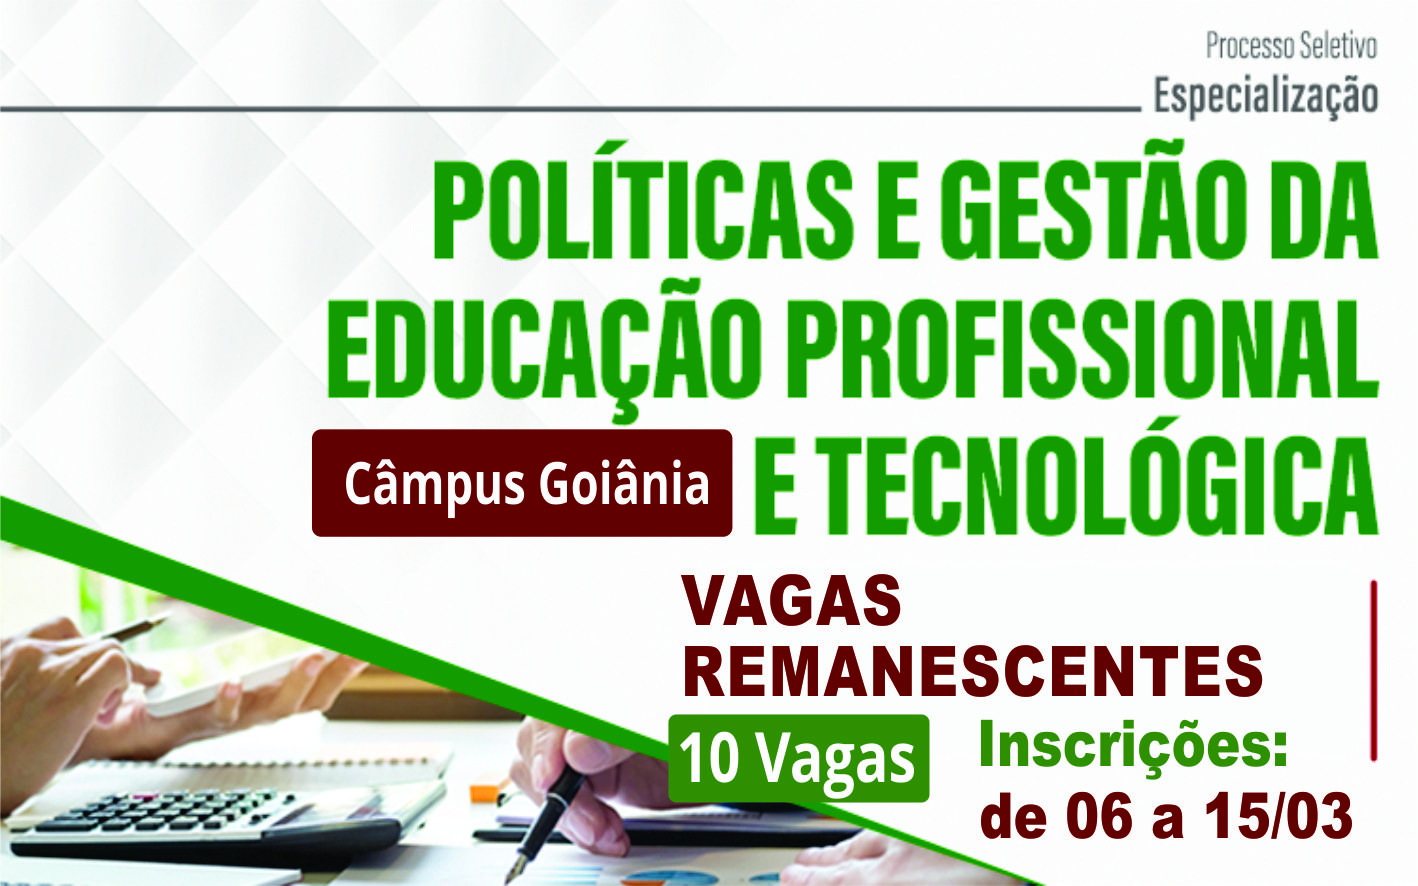 Abertas inscrições para curso de especialização em Política e Gestão em Educação Profissional e Tecnológica, no Câmpus Goiânia